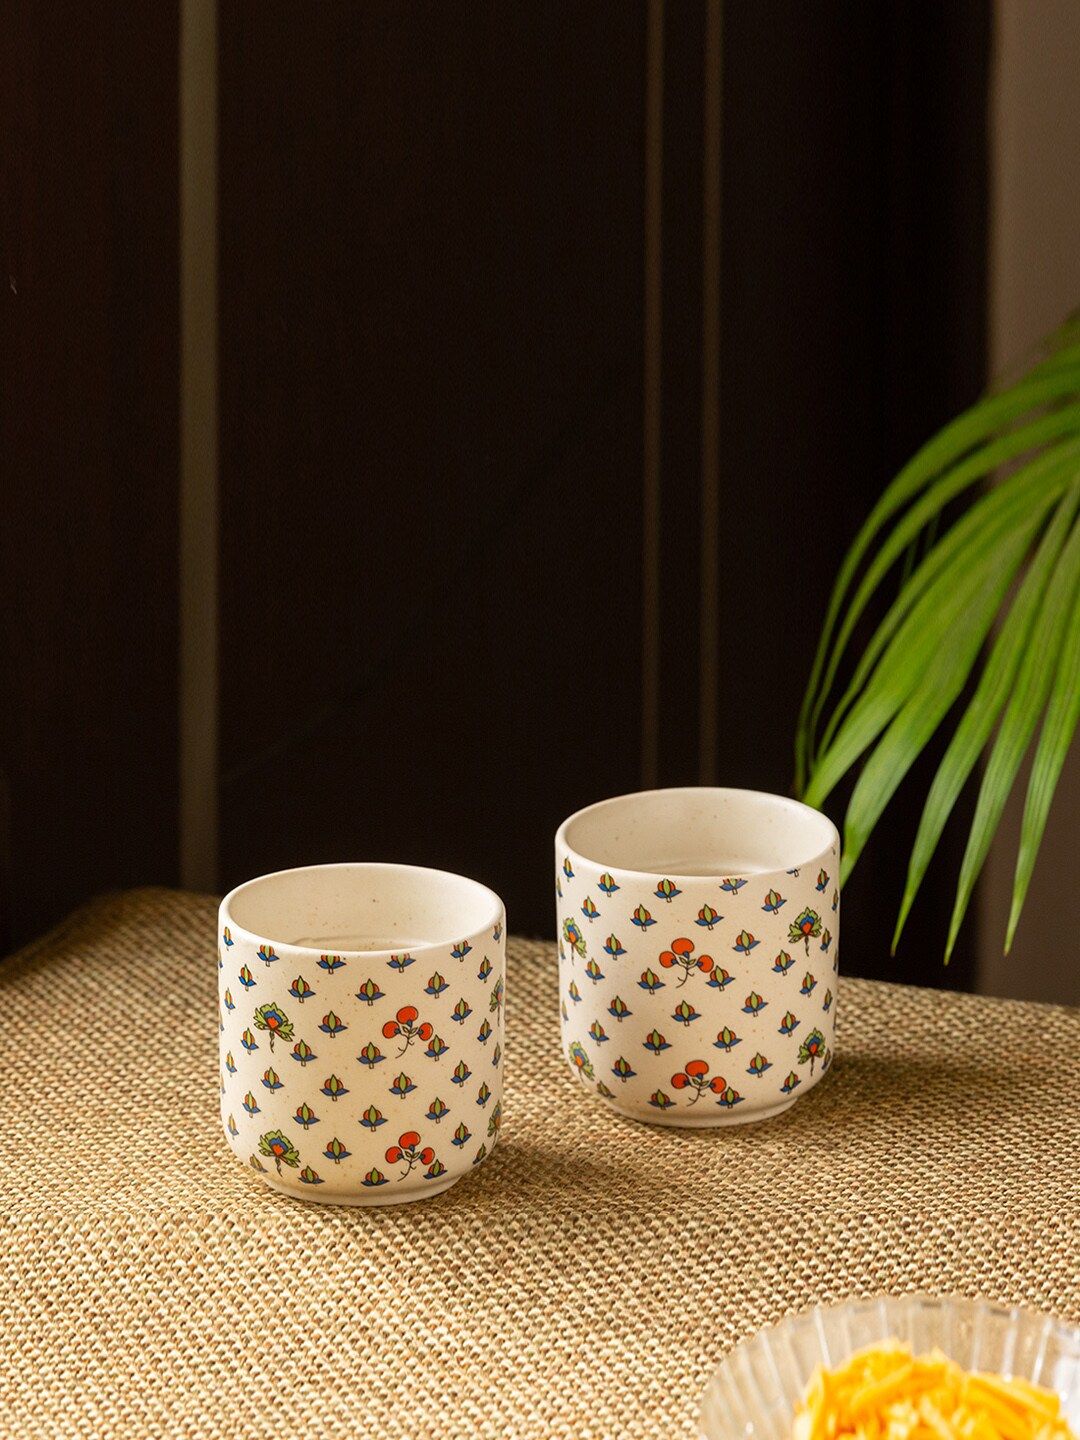 ExclusiveLane Set of 2 White & Red Printed Ceramic Kulladhs Price in India